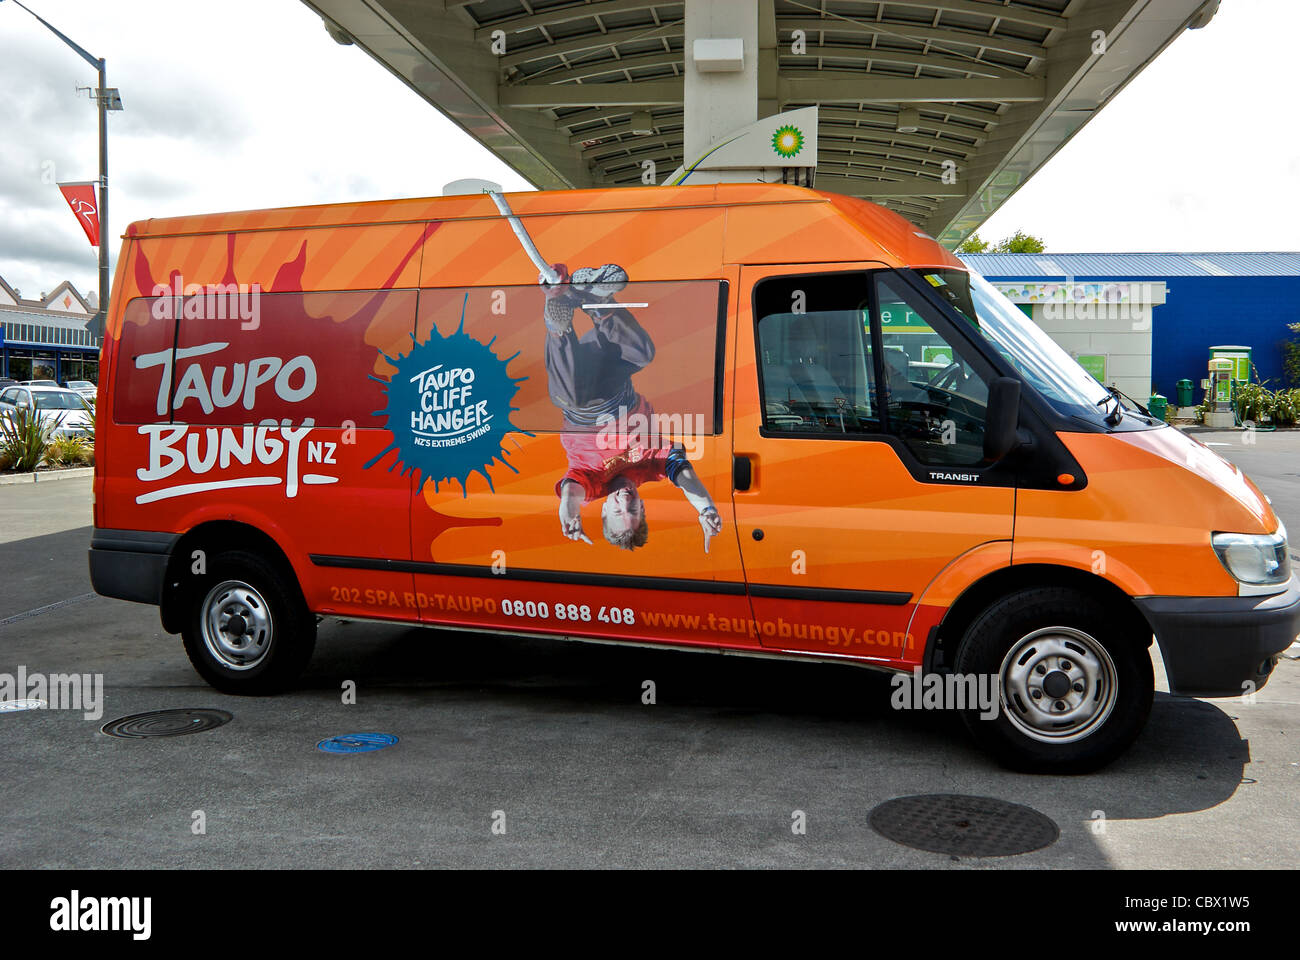 Taupo bungy jumping company van station d'essence Nouvelle Zélande Banque D'Images